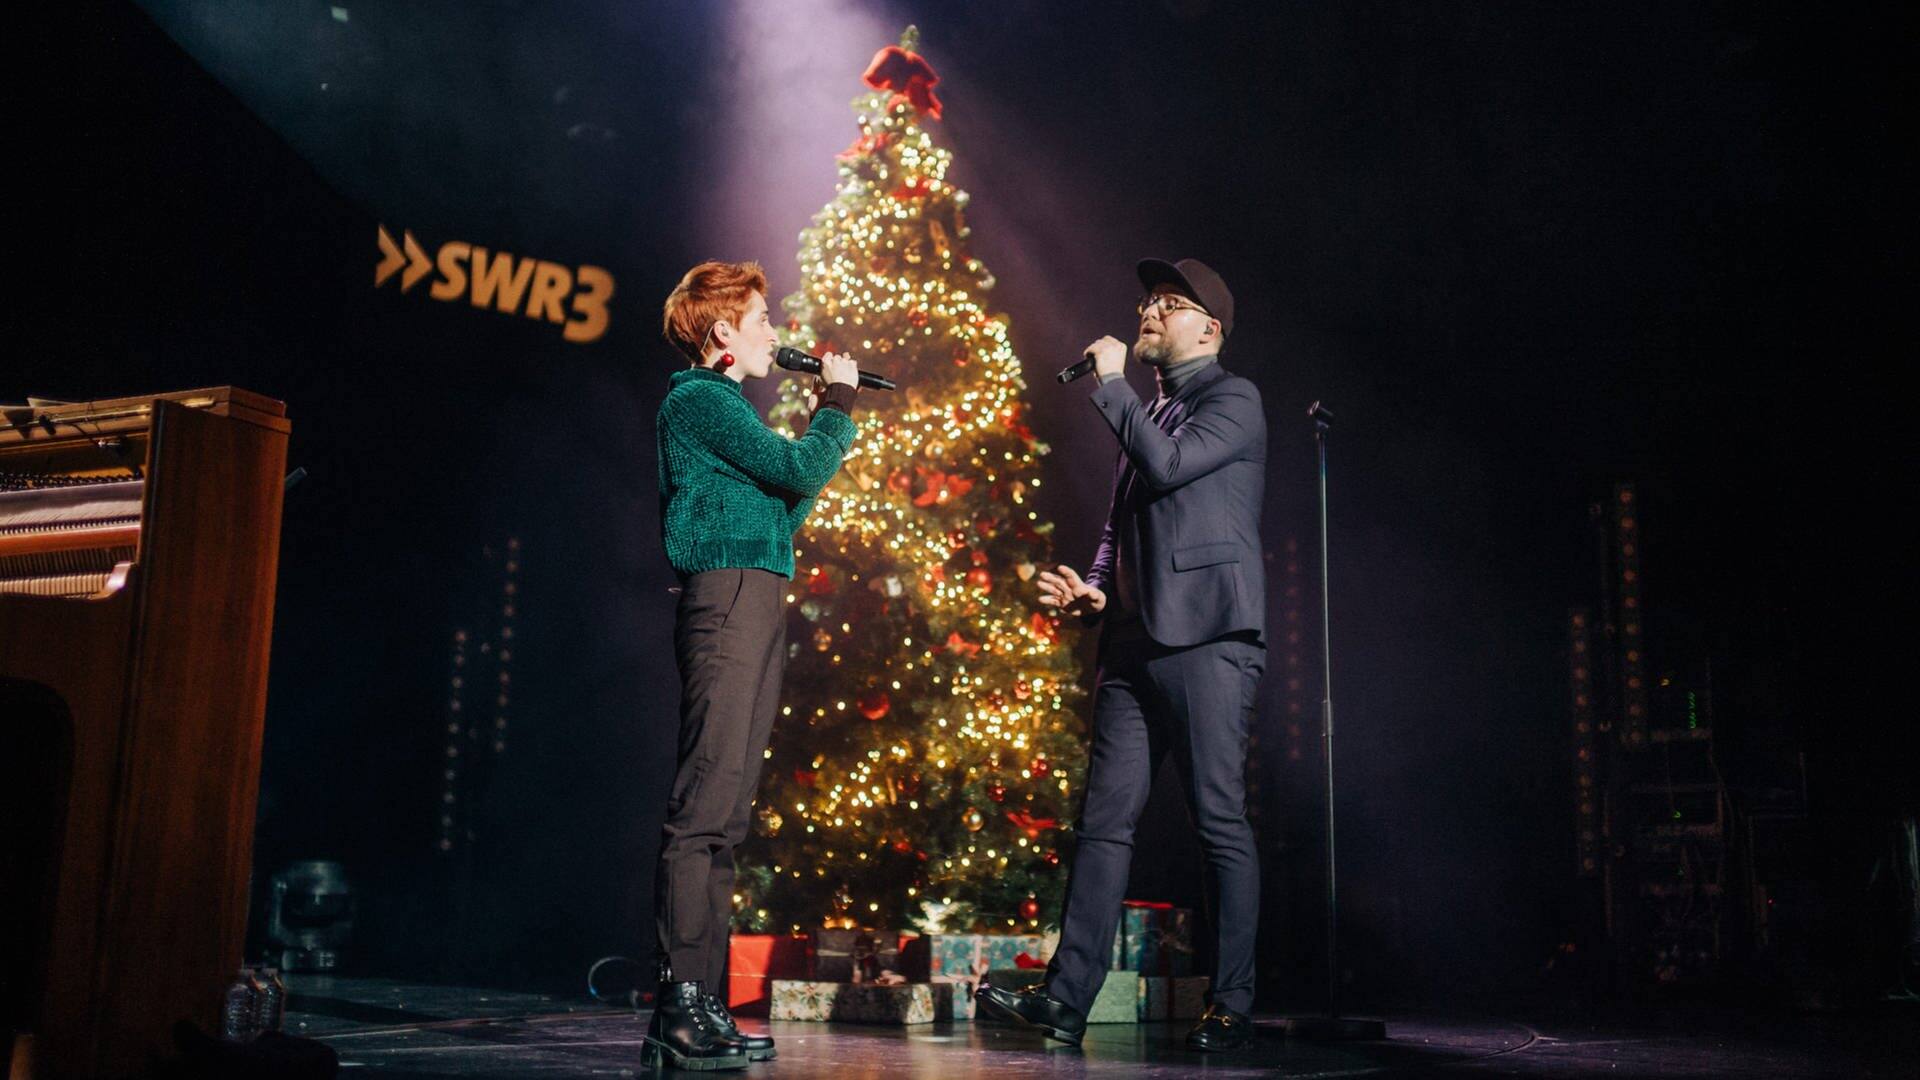 Anny Ogrezeanu, Gewinnerin der 12. Staffel "The Voice of Germany" mit Mark Forster, singend auf der Bühne vor beleuchtetem Weihnachtsbaum (Foto: SWR3, SWR3/Niko Neithardt)